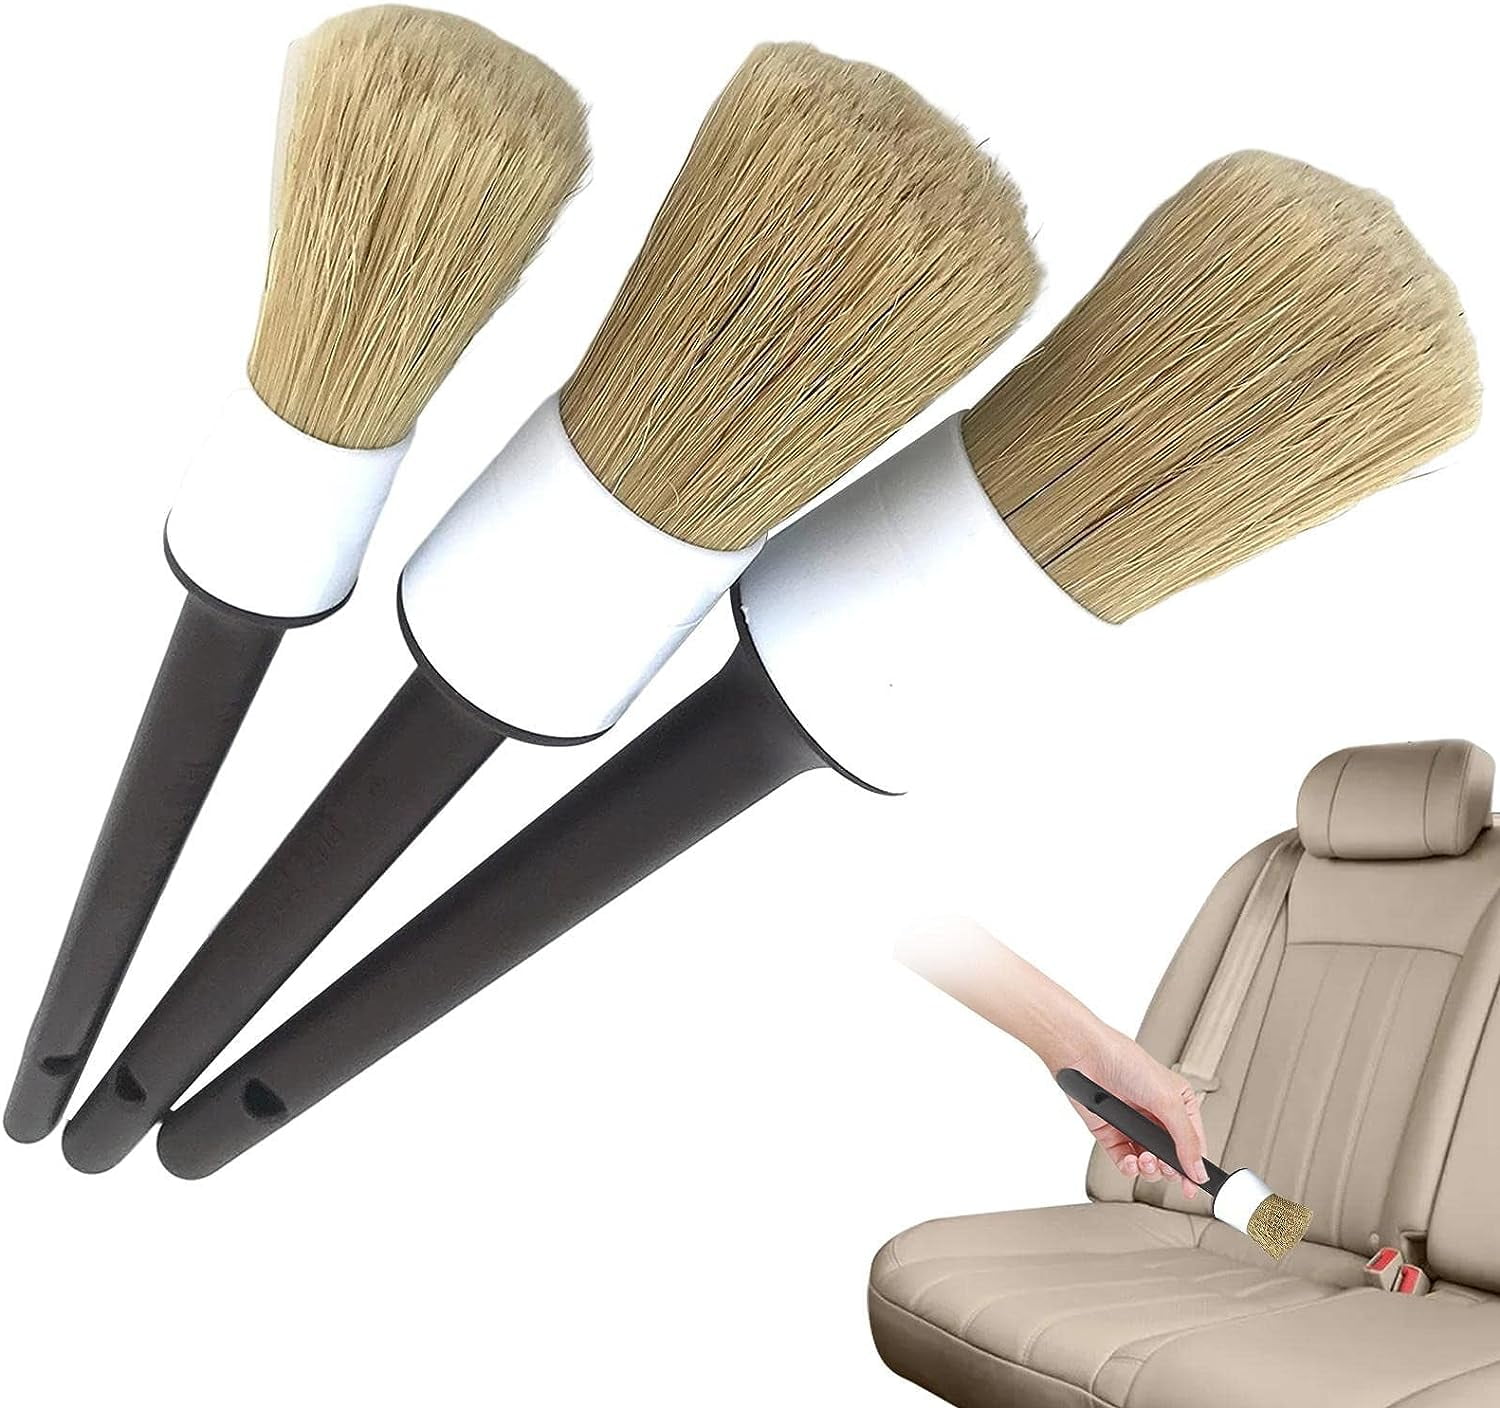 Car Interior Detailing Brush,Soft Bristle Cleaning Brush Car Detailing  Brush Dus